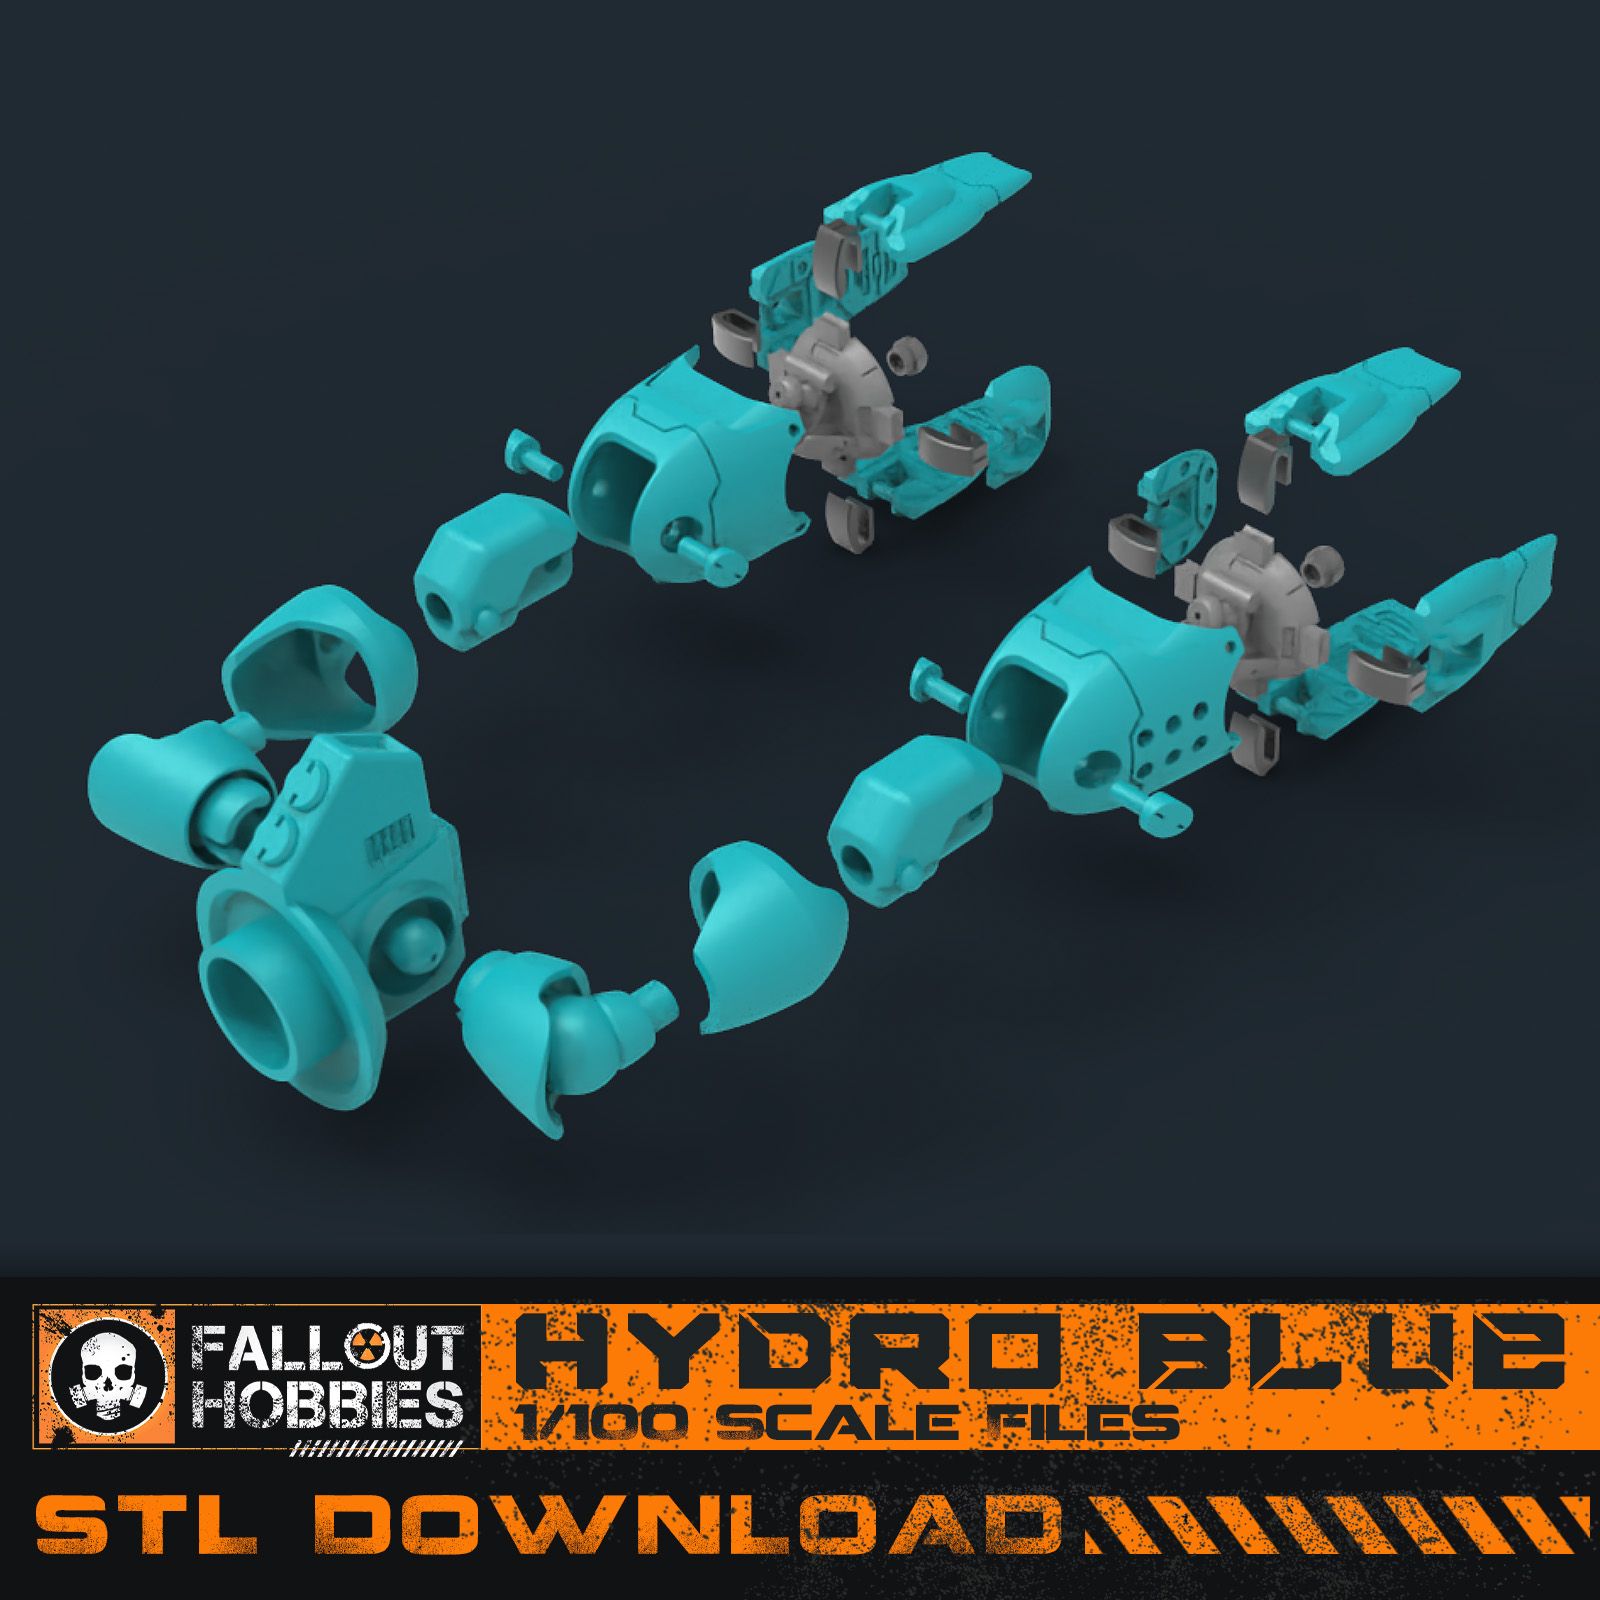 Legs-1.jpg Datei 3D Hydro Blue Mecha Anzug・Design für 3D-Drucker zum herunterladen, FalloutHobbies